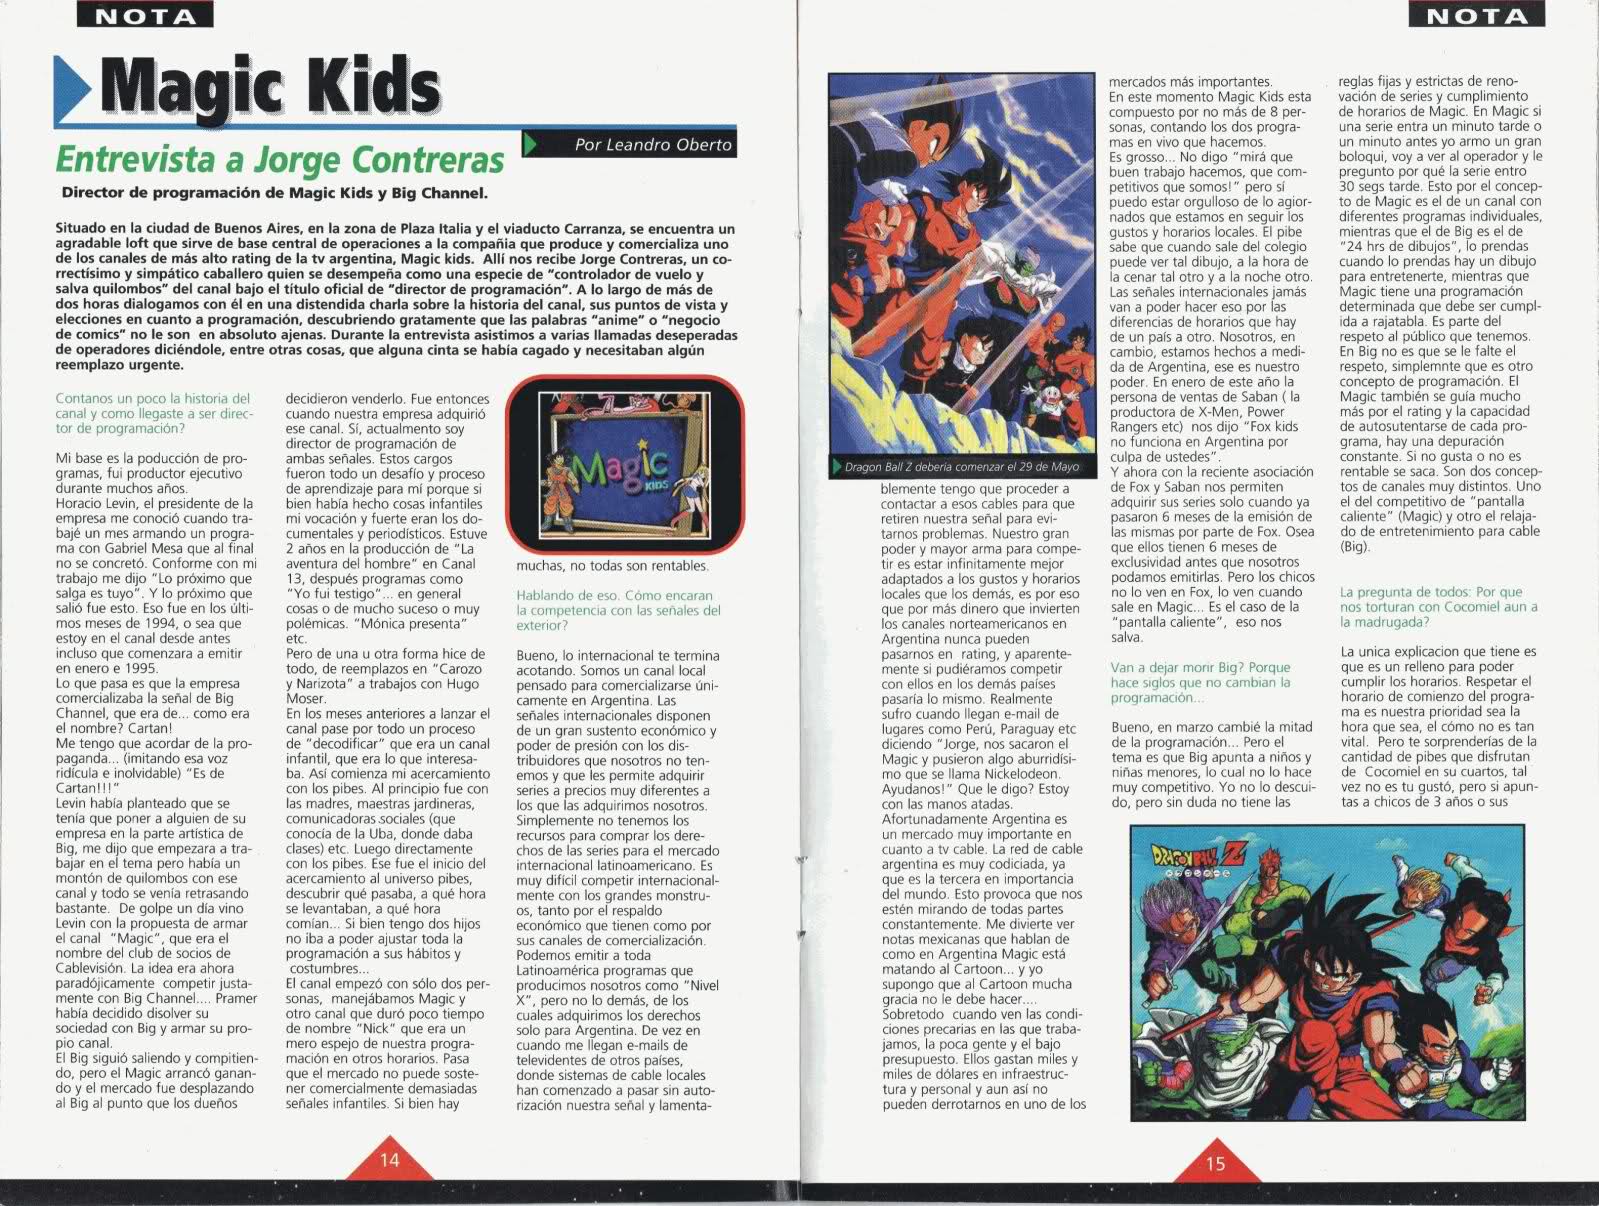 Entrevista a Jorge Contreras, programador del Magic Kids (1998) 2q1bdoj